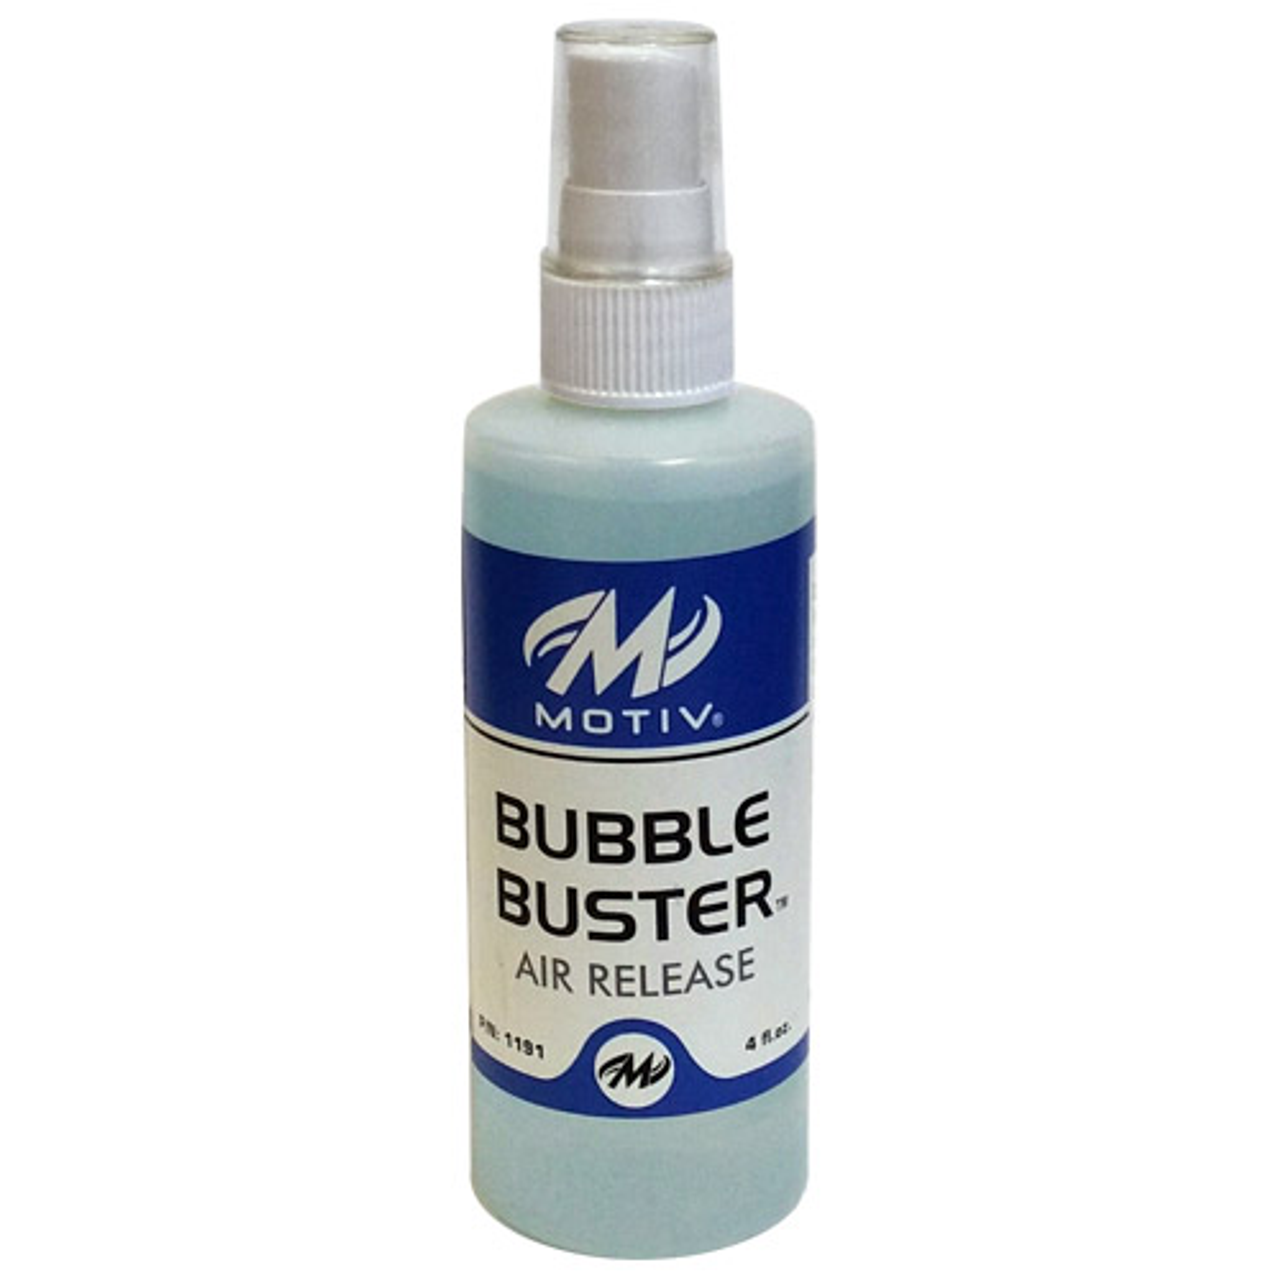 Motiv Bubble Buster Air Release - 4oz Bottle